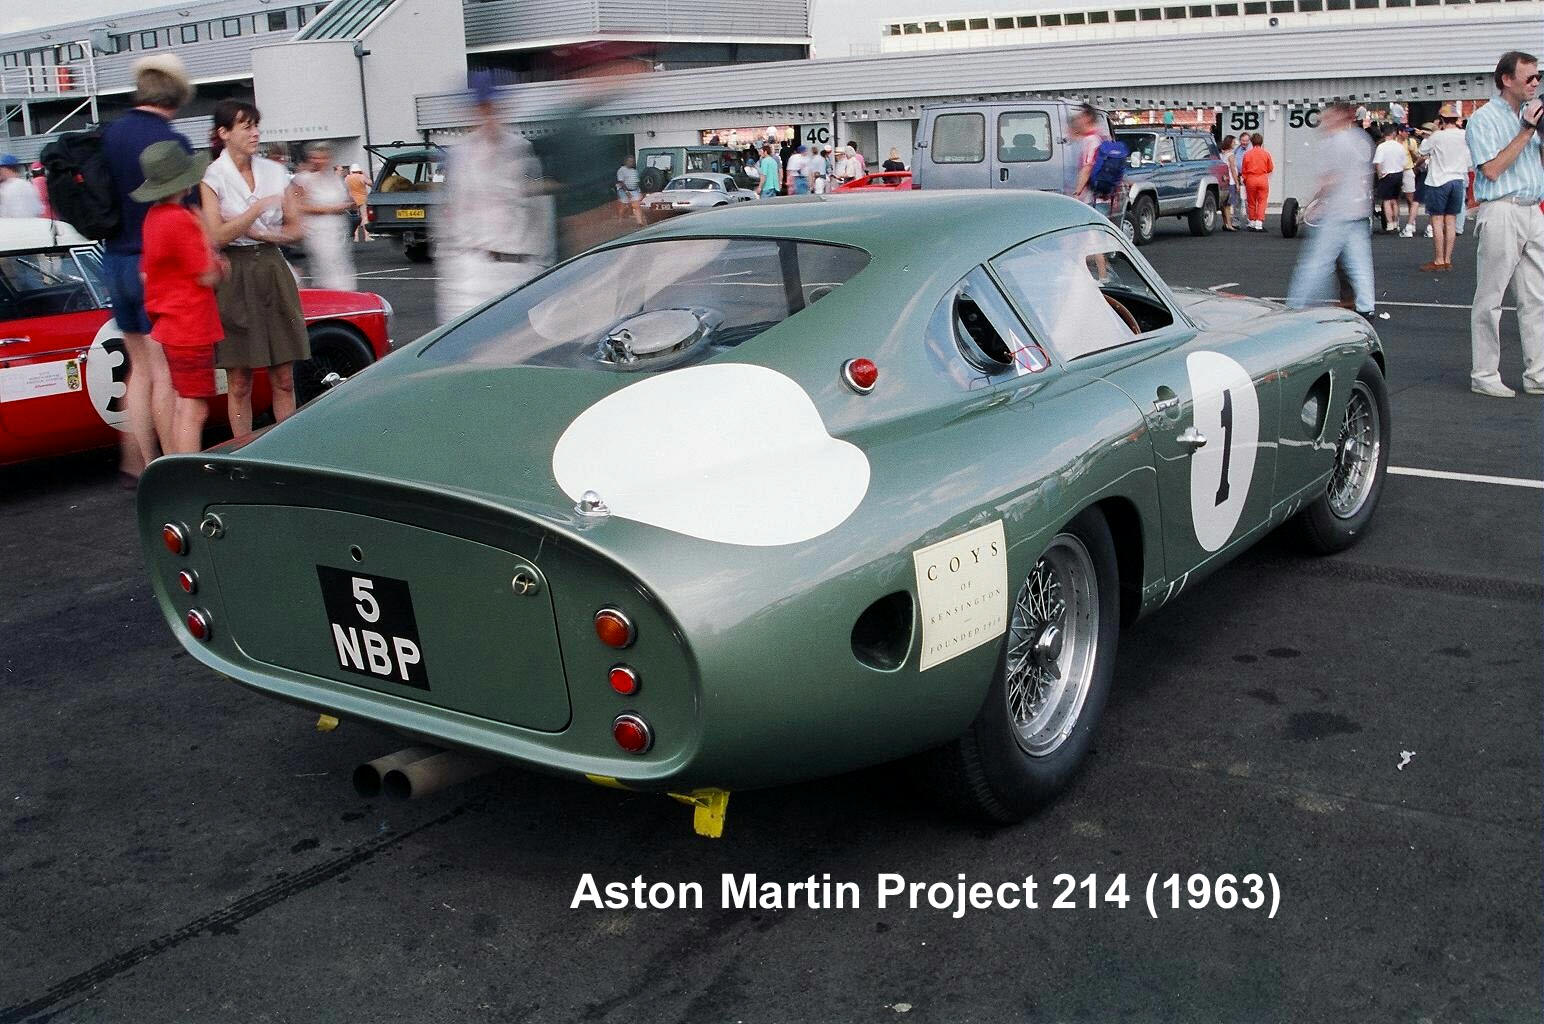 Aston Martin DP 214